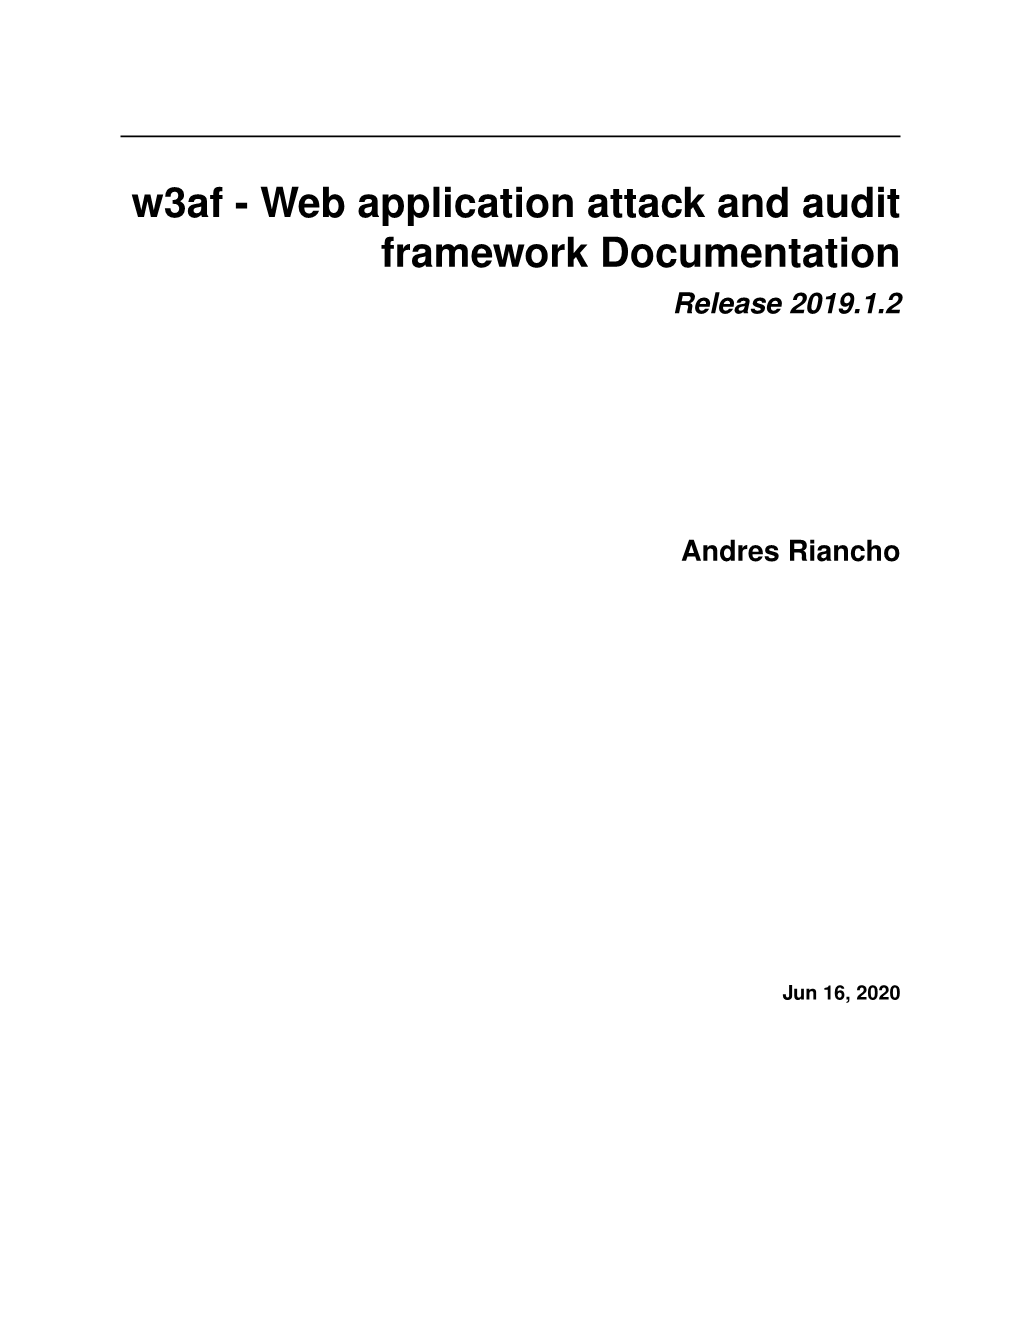 W3af - Web Application Attack and Audit Framework Documentation Release 2019.1.2